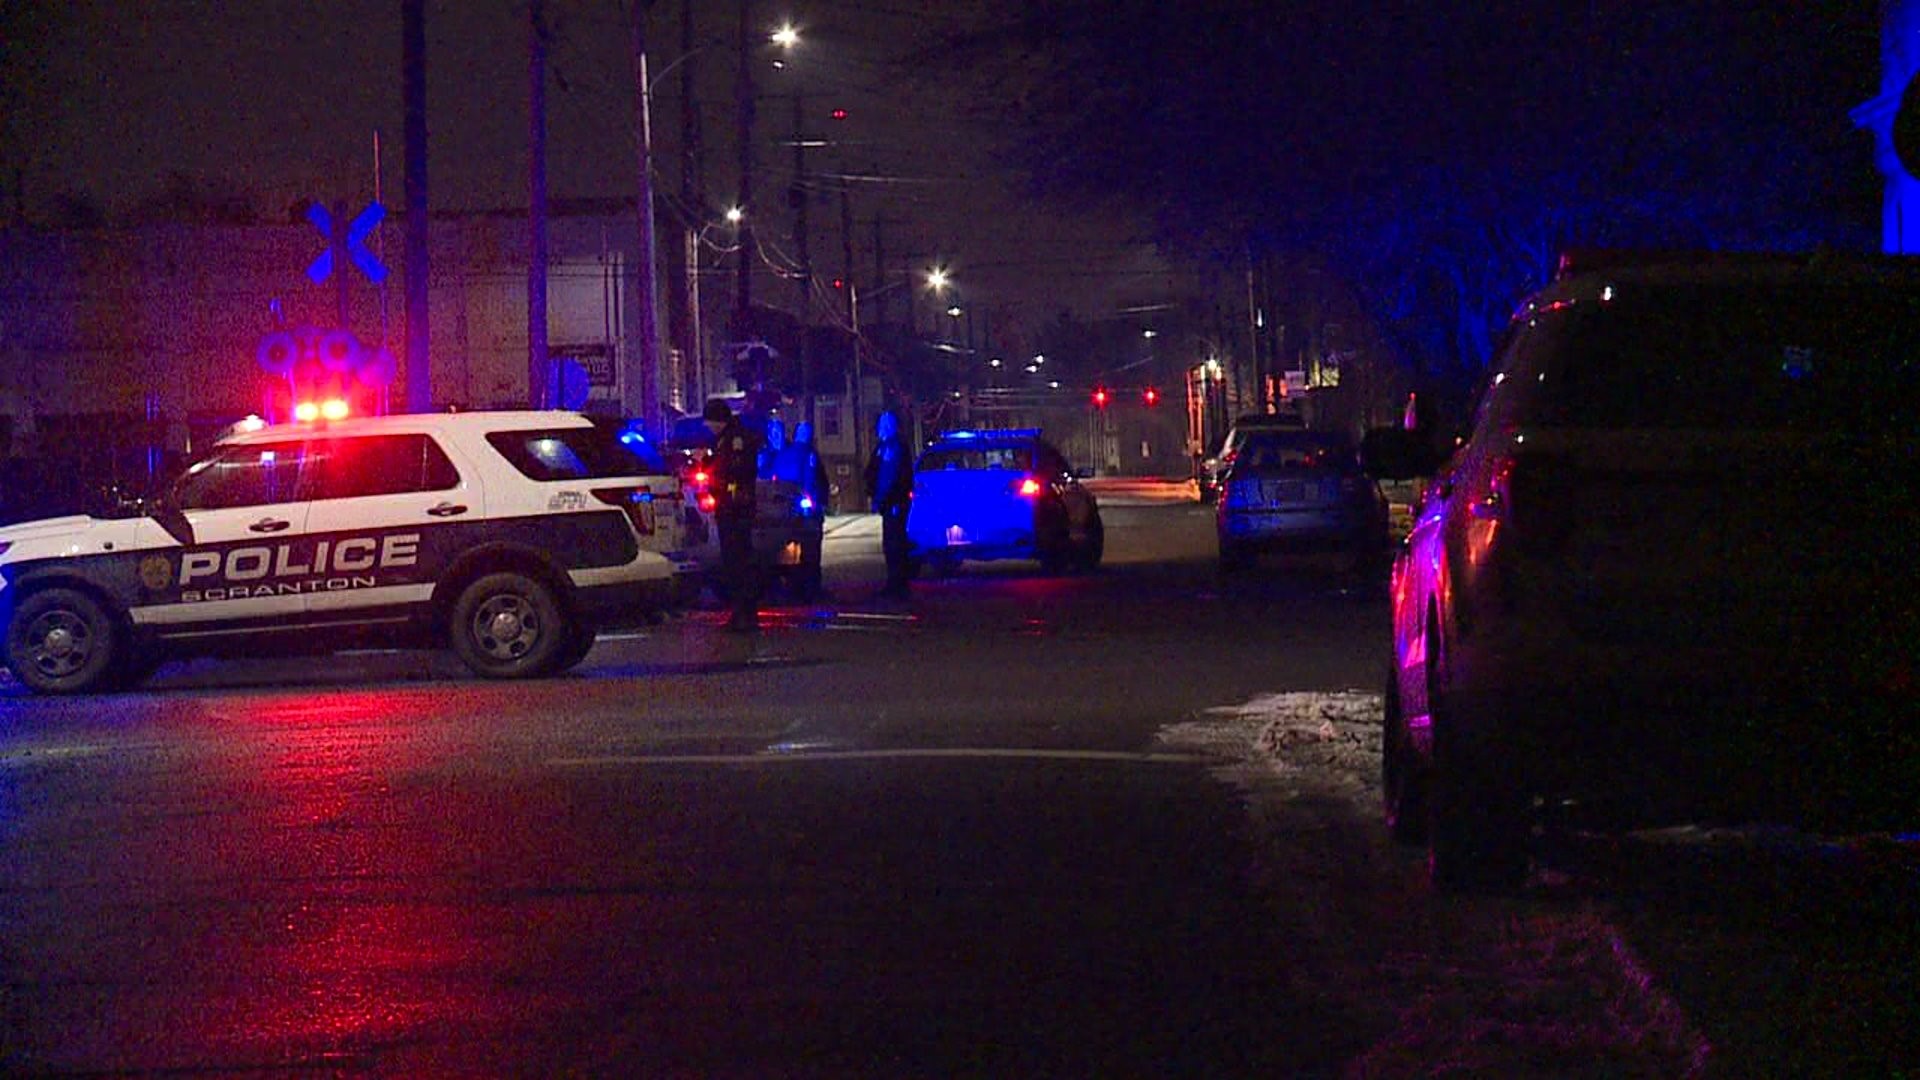 Police Investigating Shots Fired in Scranton